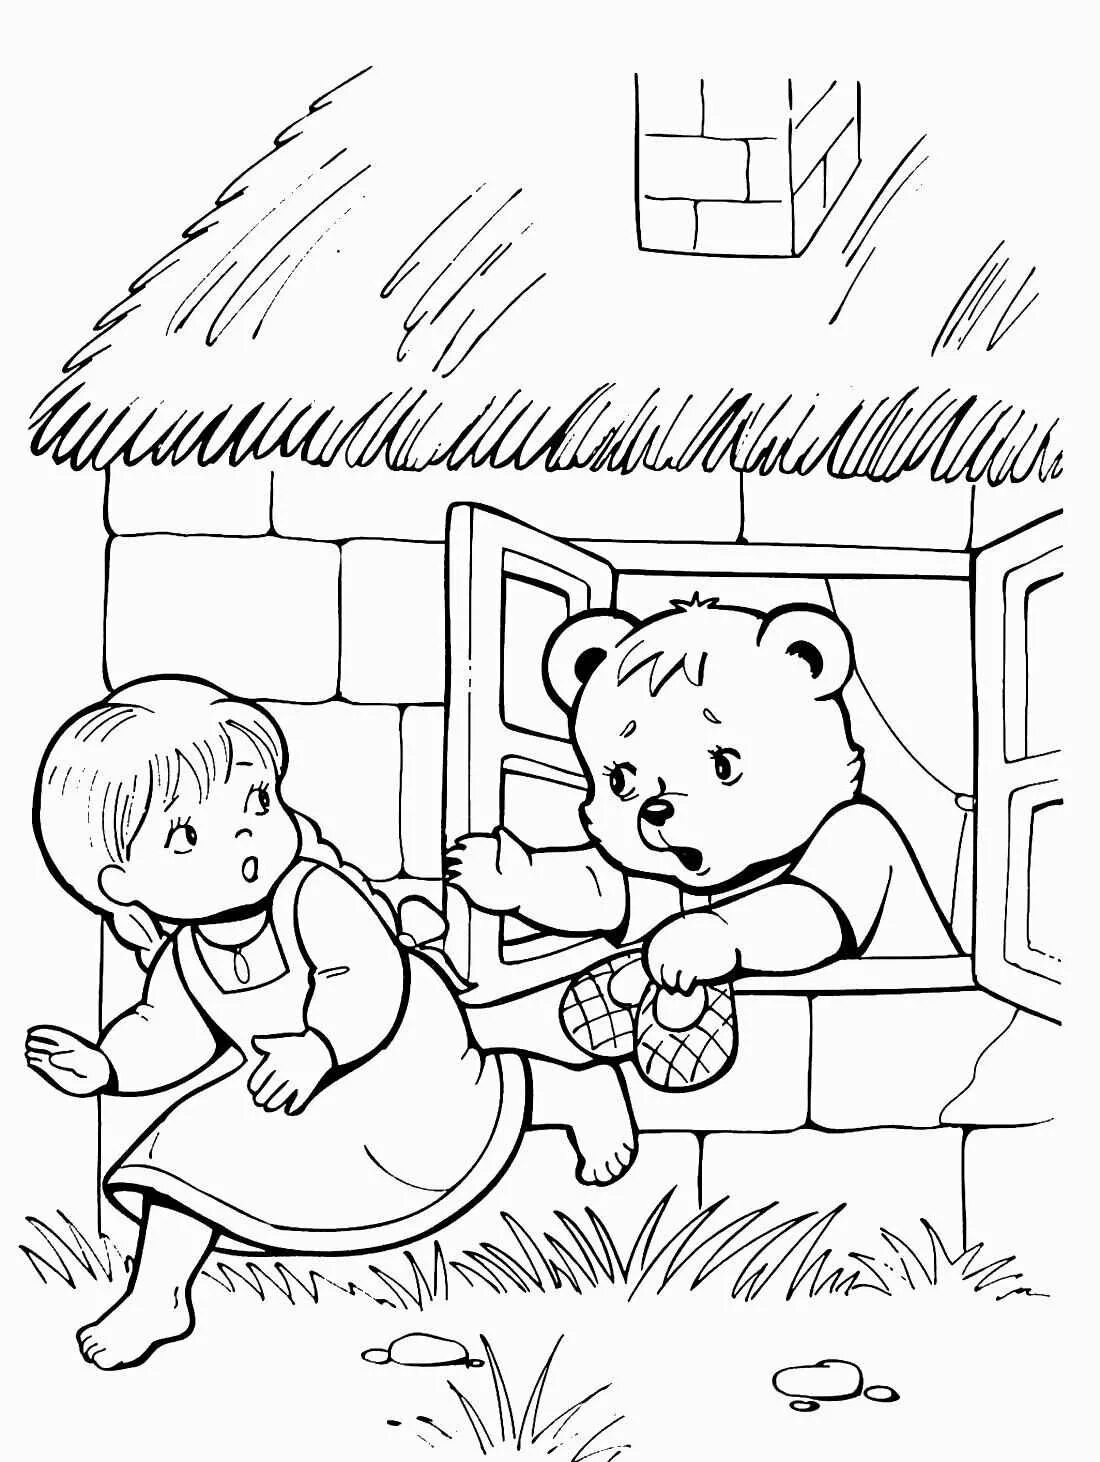 Раскраски сказки 2 3 года. Раскраска по сказке три медведя для детей. Маша и три медведя сказка раскраска. Раскраска к сказке три медведя для детей. Раскраска русские народные сказки три медведя.